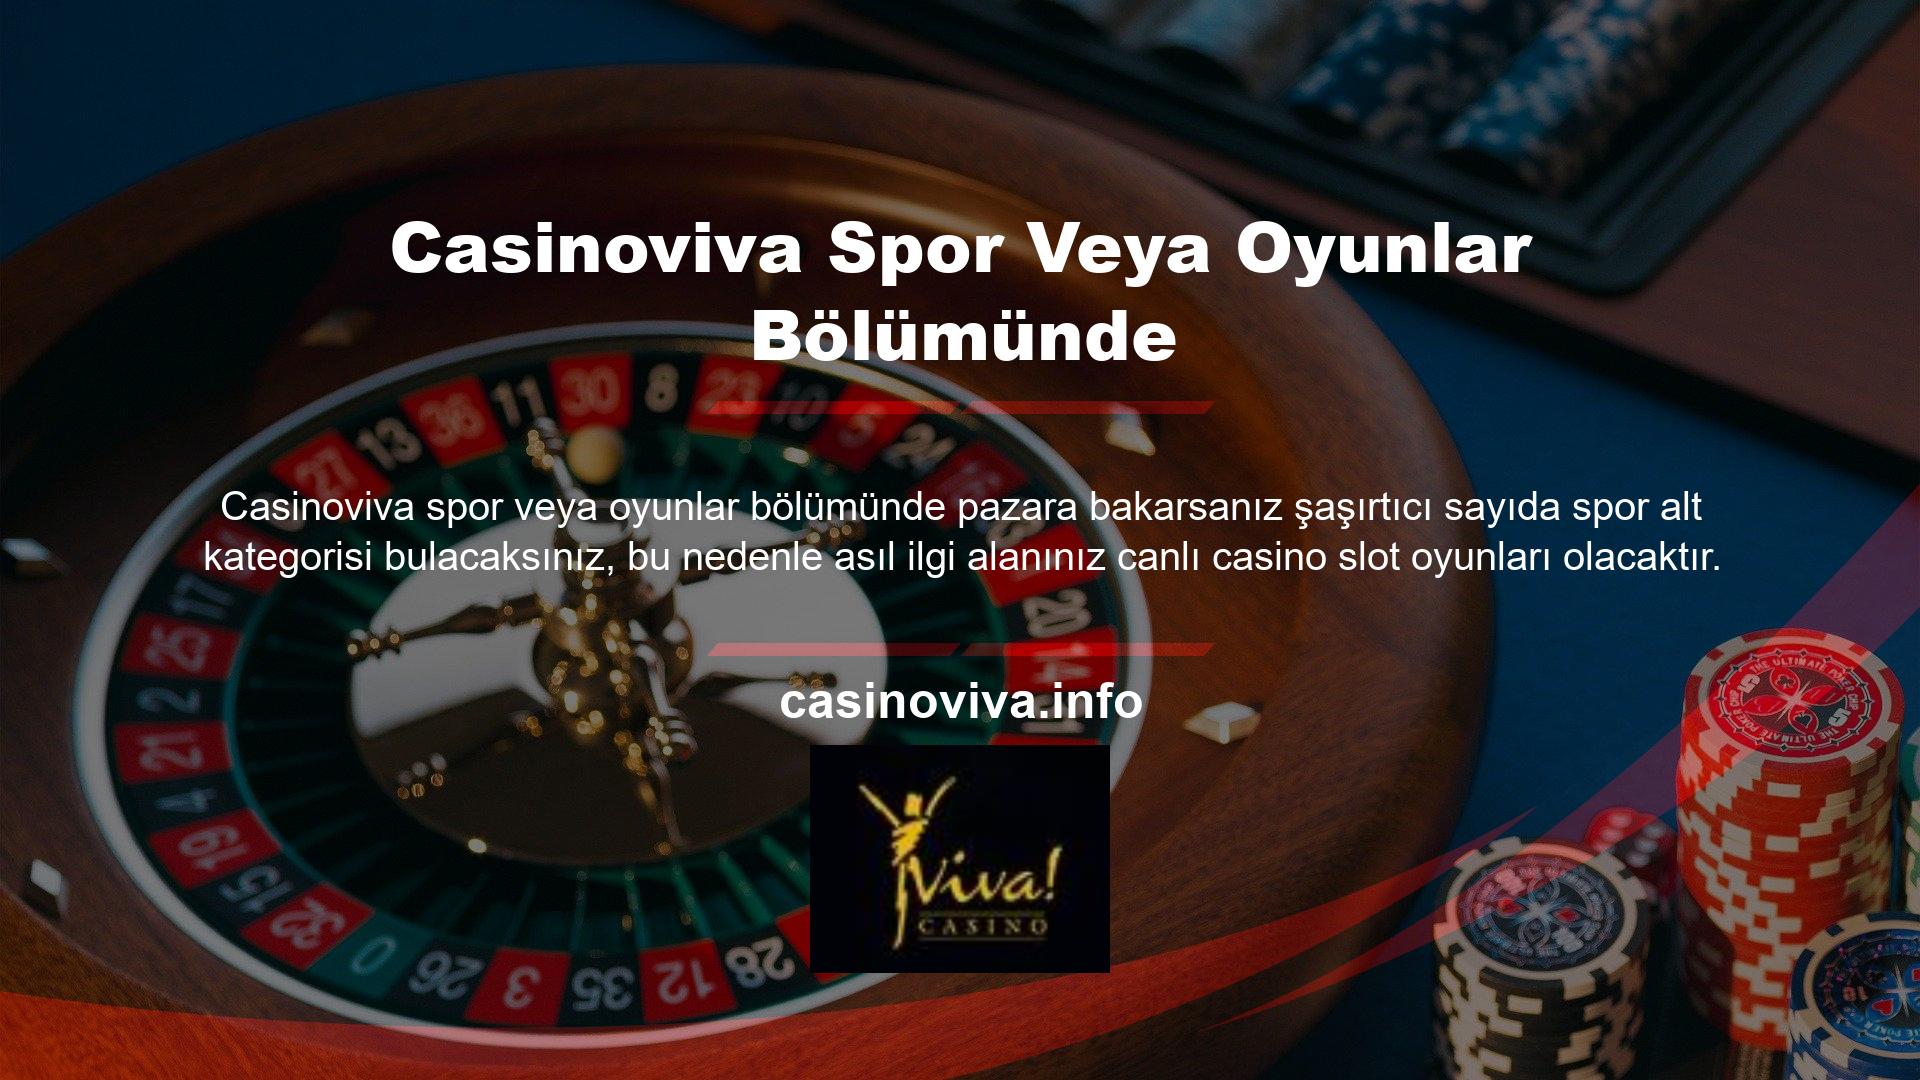 Casinoviva birçok ülkede faaliyet gösteren köklü bir bahis şirketi olduğundan, güvenli bir şekilde para yatırma ve çekme işlemleri gerçekleştirebilirsiniz